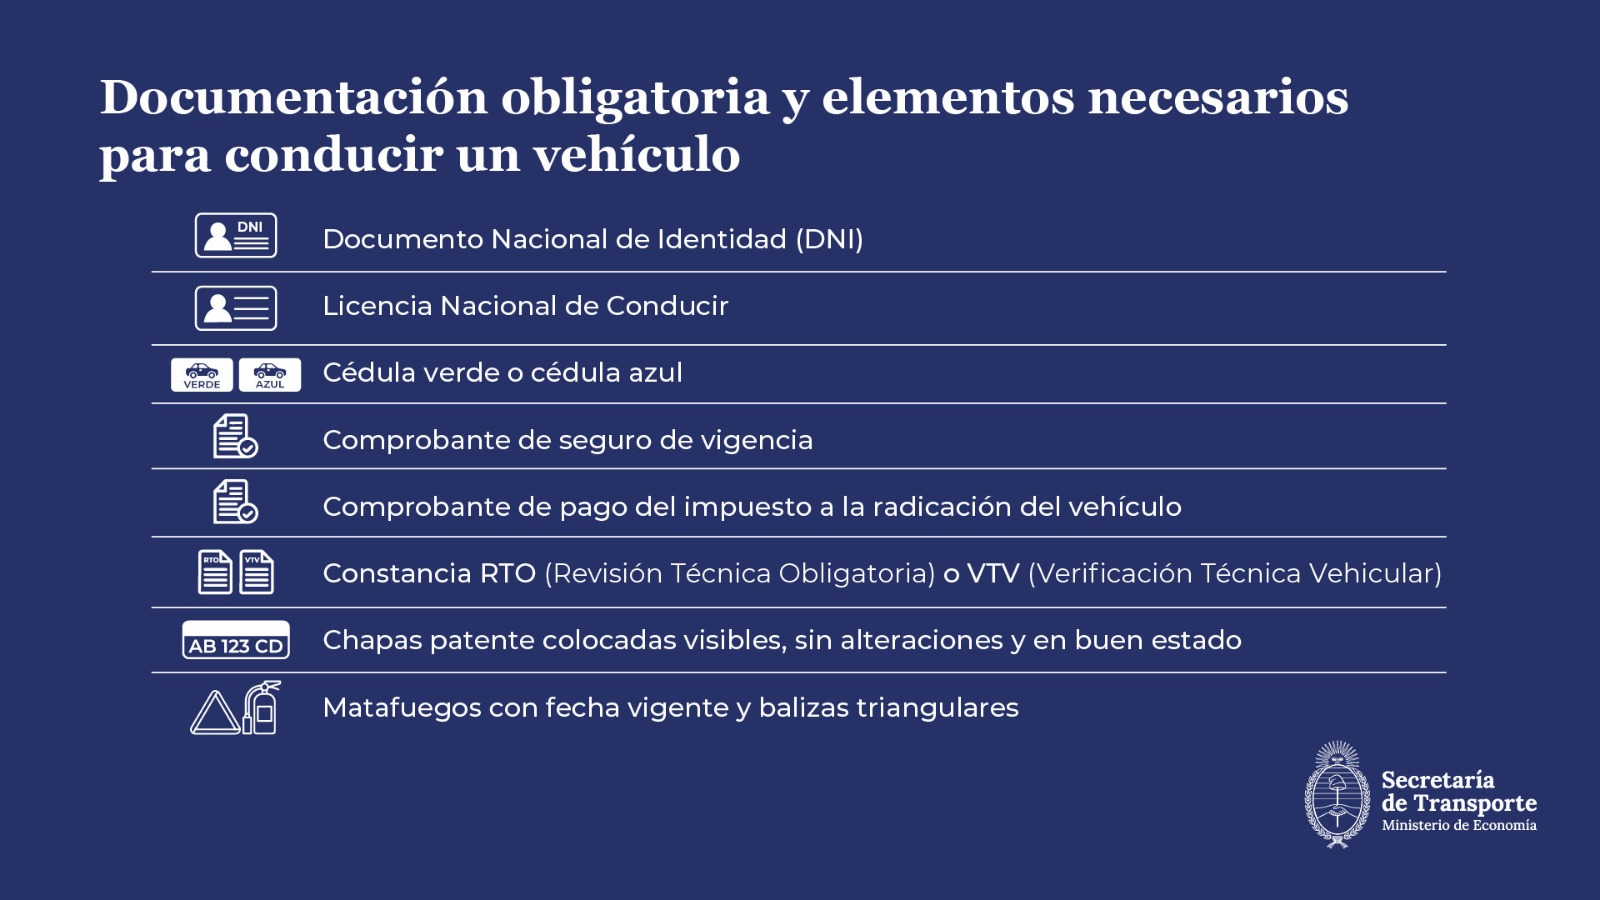 Documentación obligatoria y elementos necesarios para conducir un vehículo